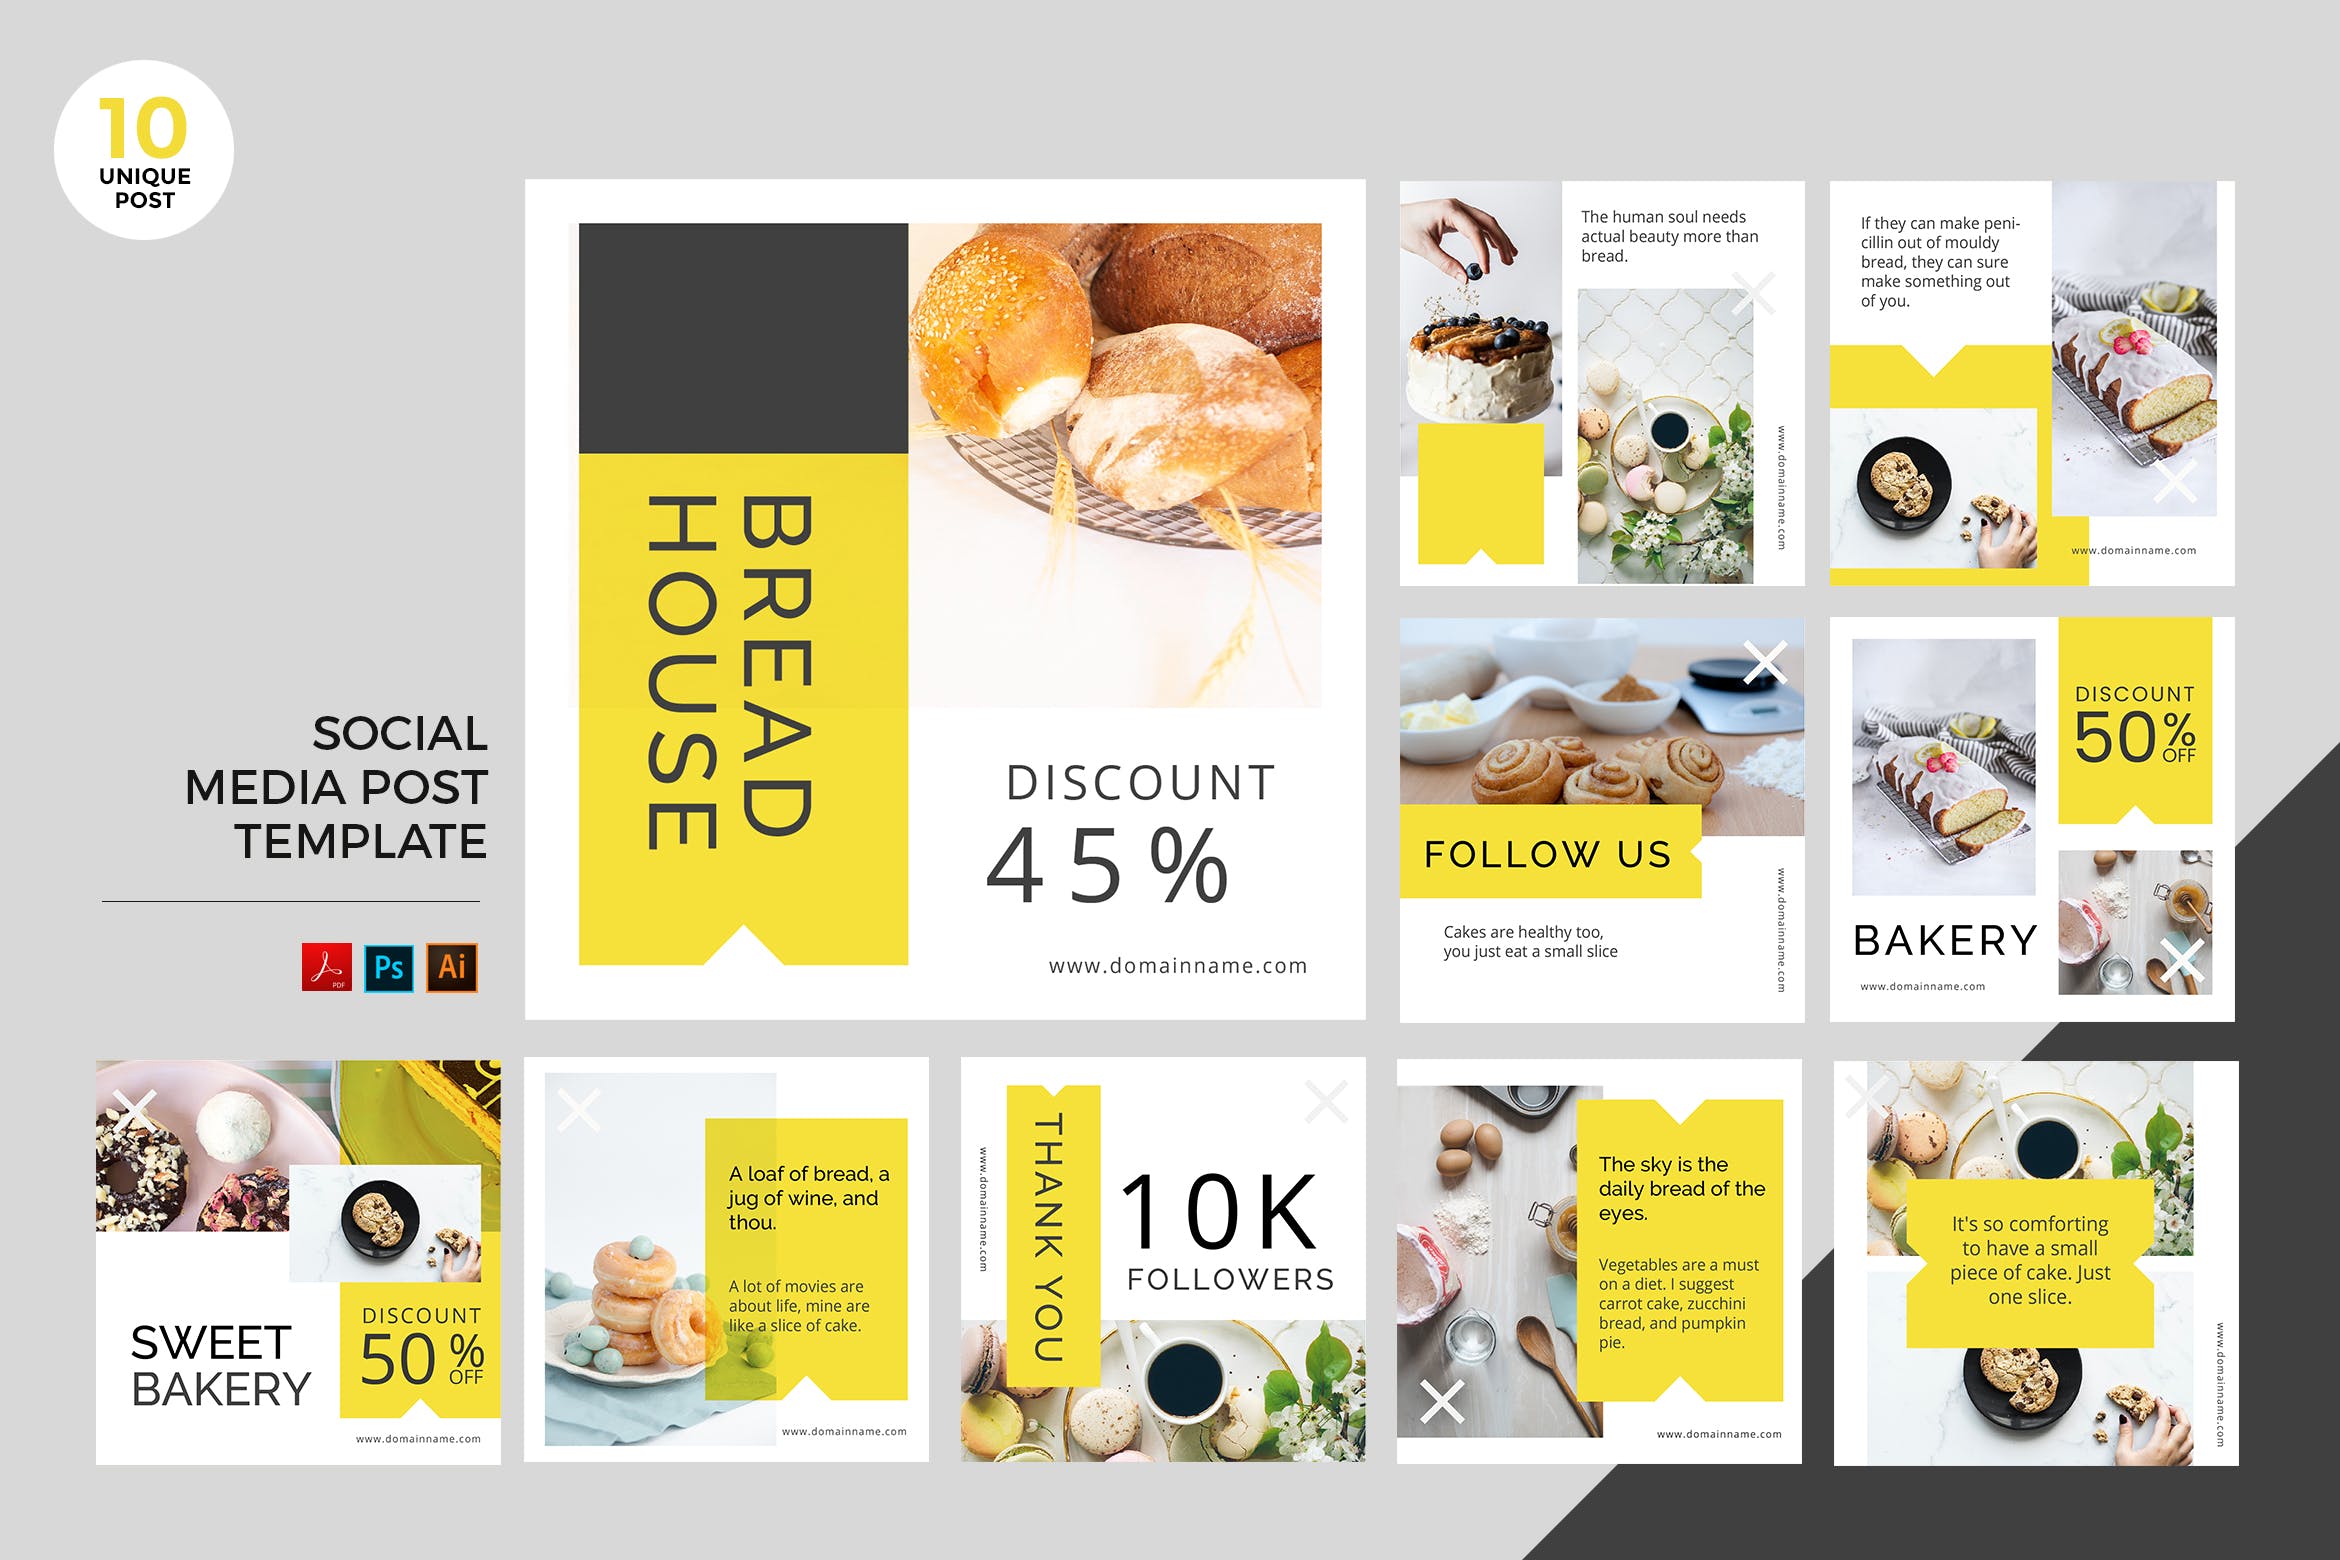 面包店/面包品牌社交媒体广告设计PSD&AI模板第一素材精选 Bakery Social Media Kit PSD & AI Template插图